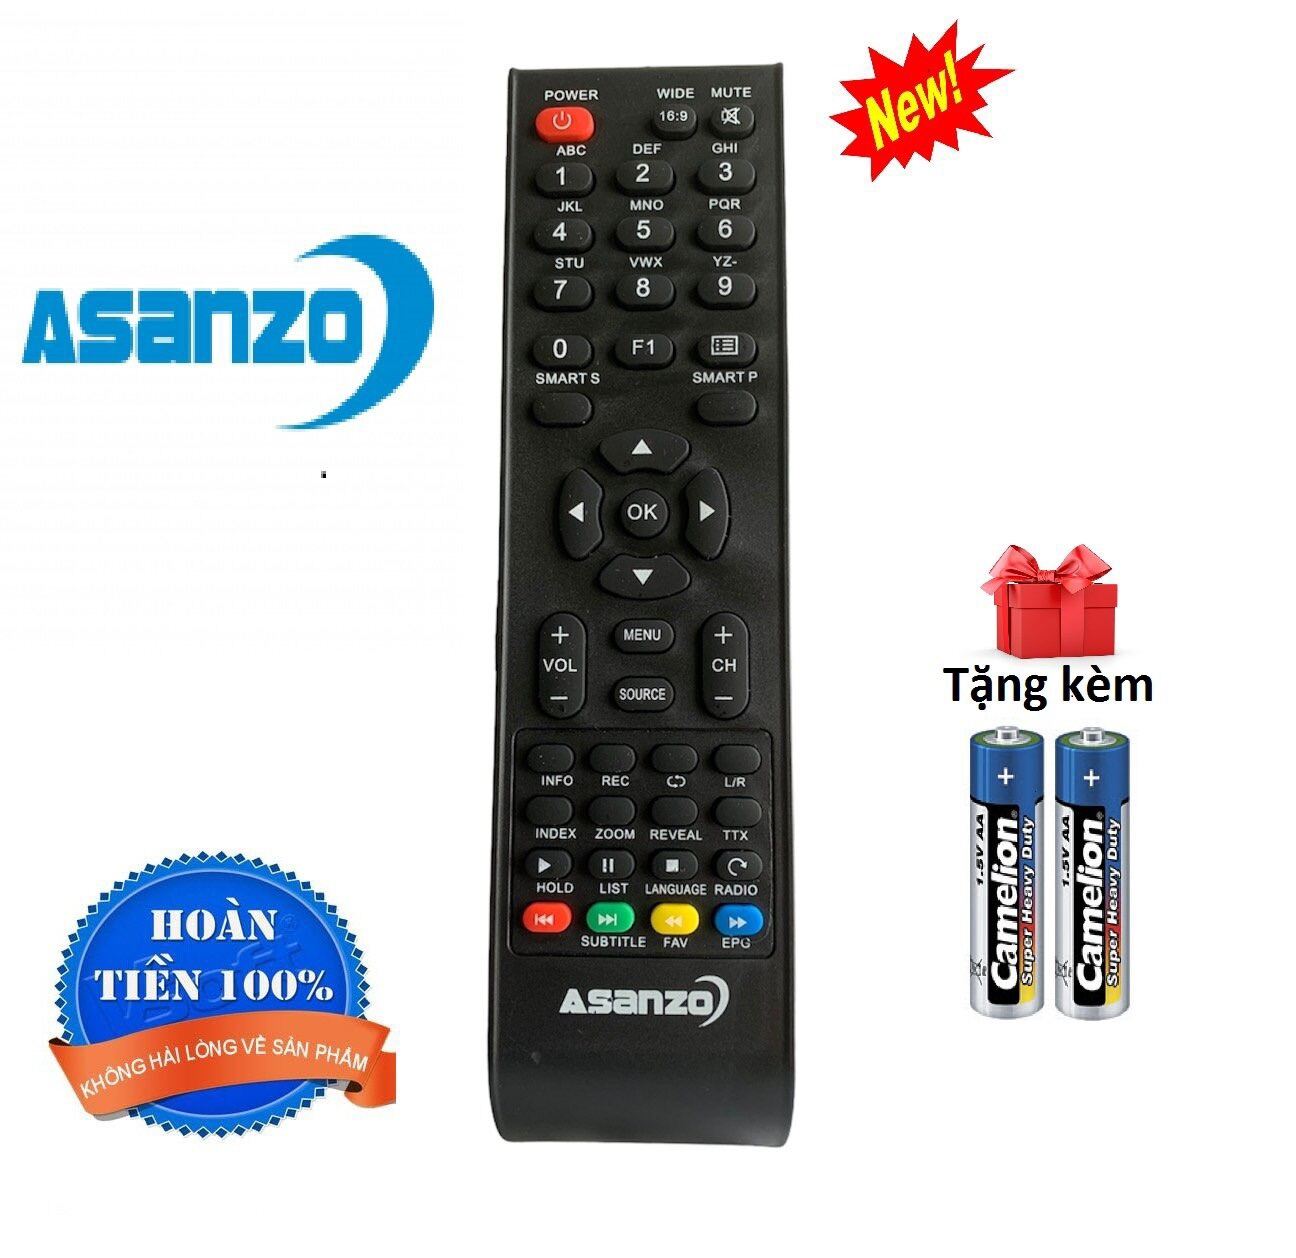 Bảng giá Điều khiển tivi Asanzo các dòng Asanzo LED/LCD smart TV - Hàng tốt [ tặng kèm pin ]